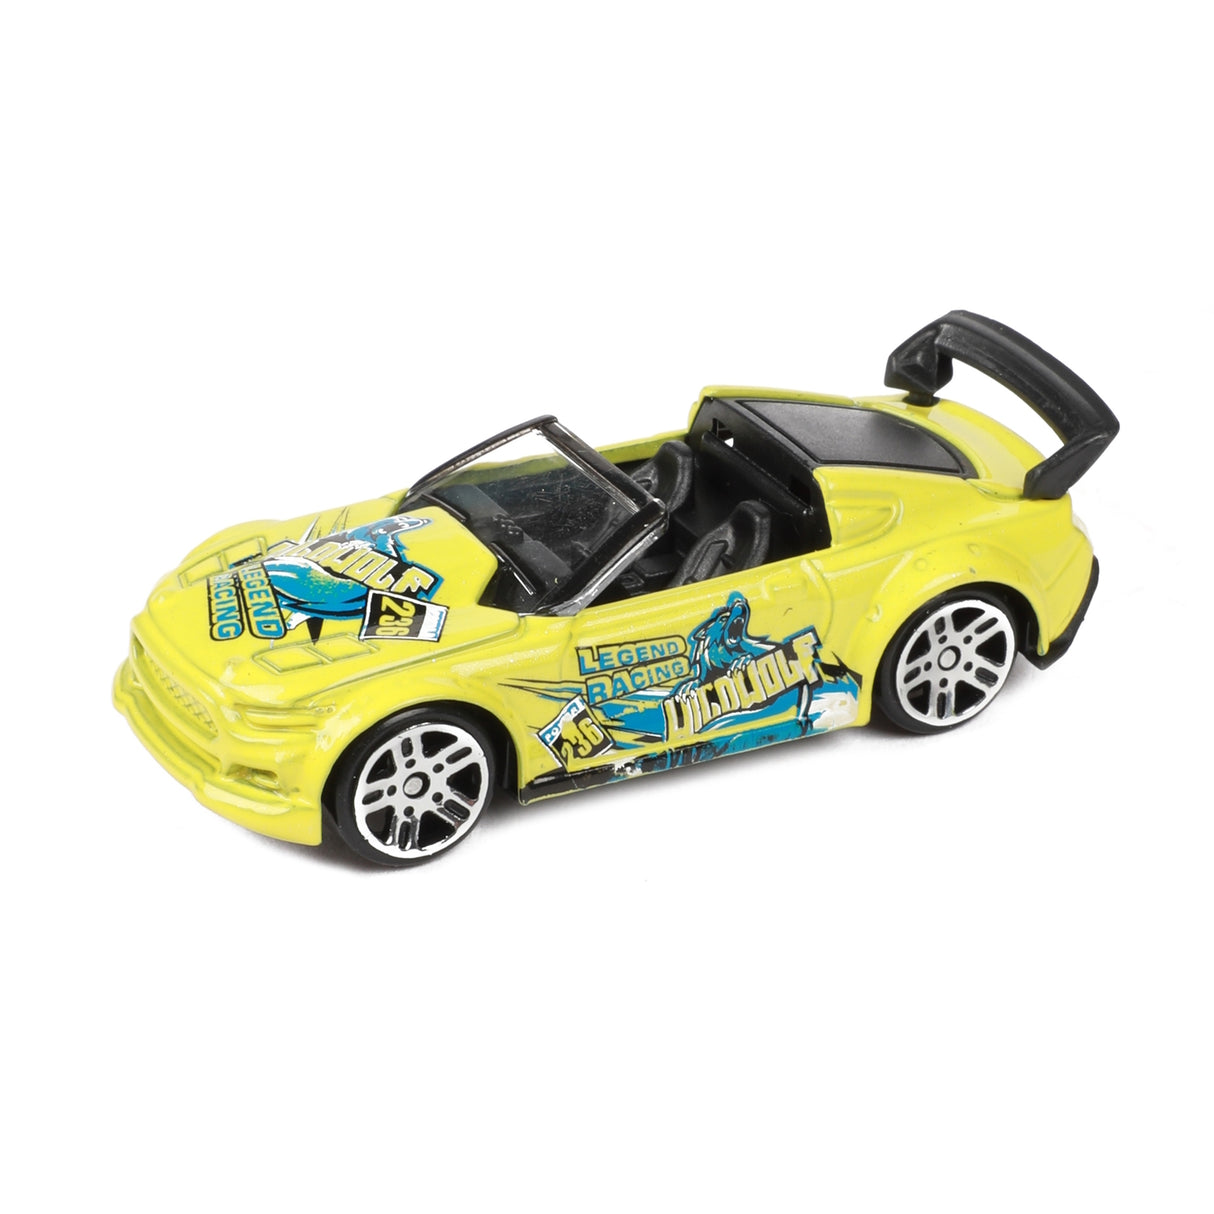 LKW Spielzeugauto mit 6 Sportwagen in bunten Farben